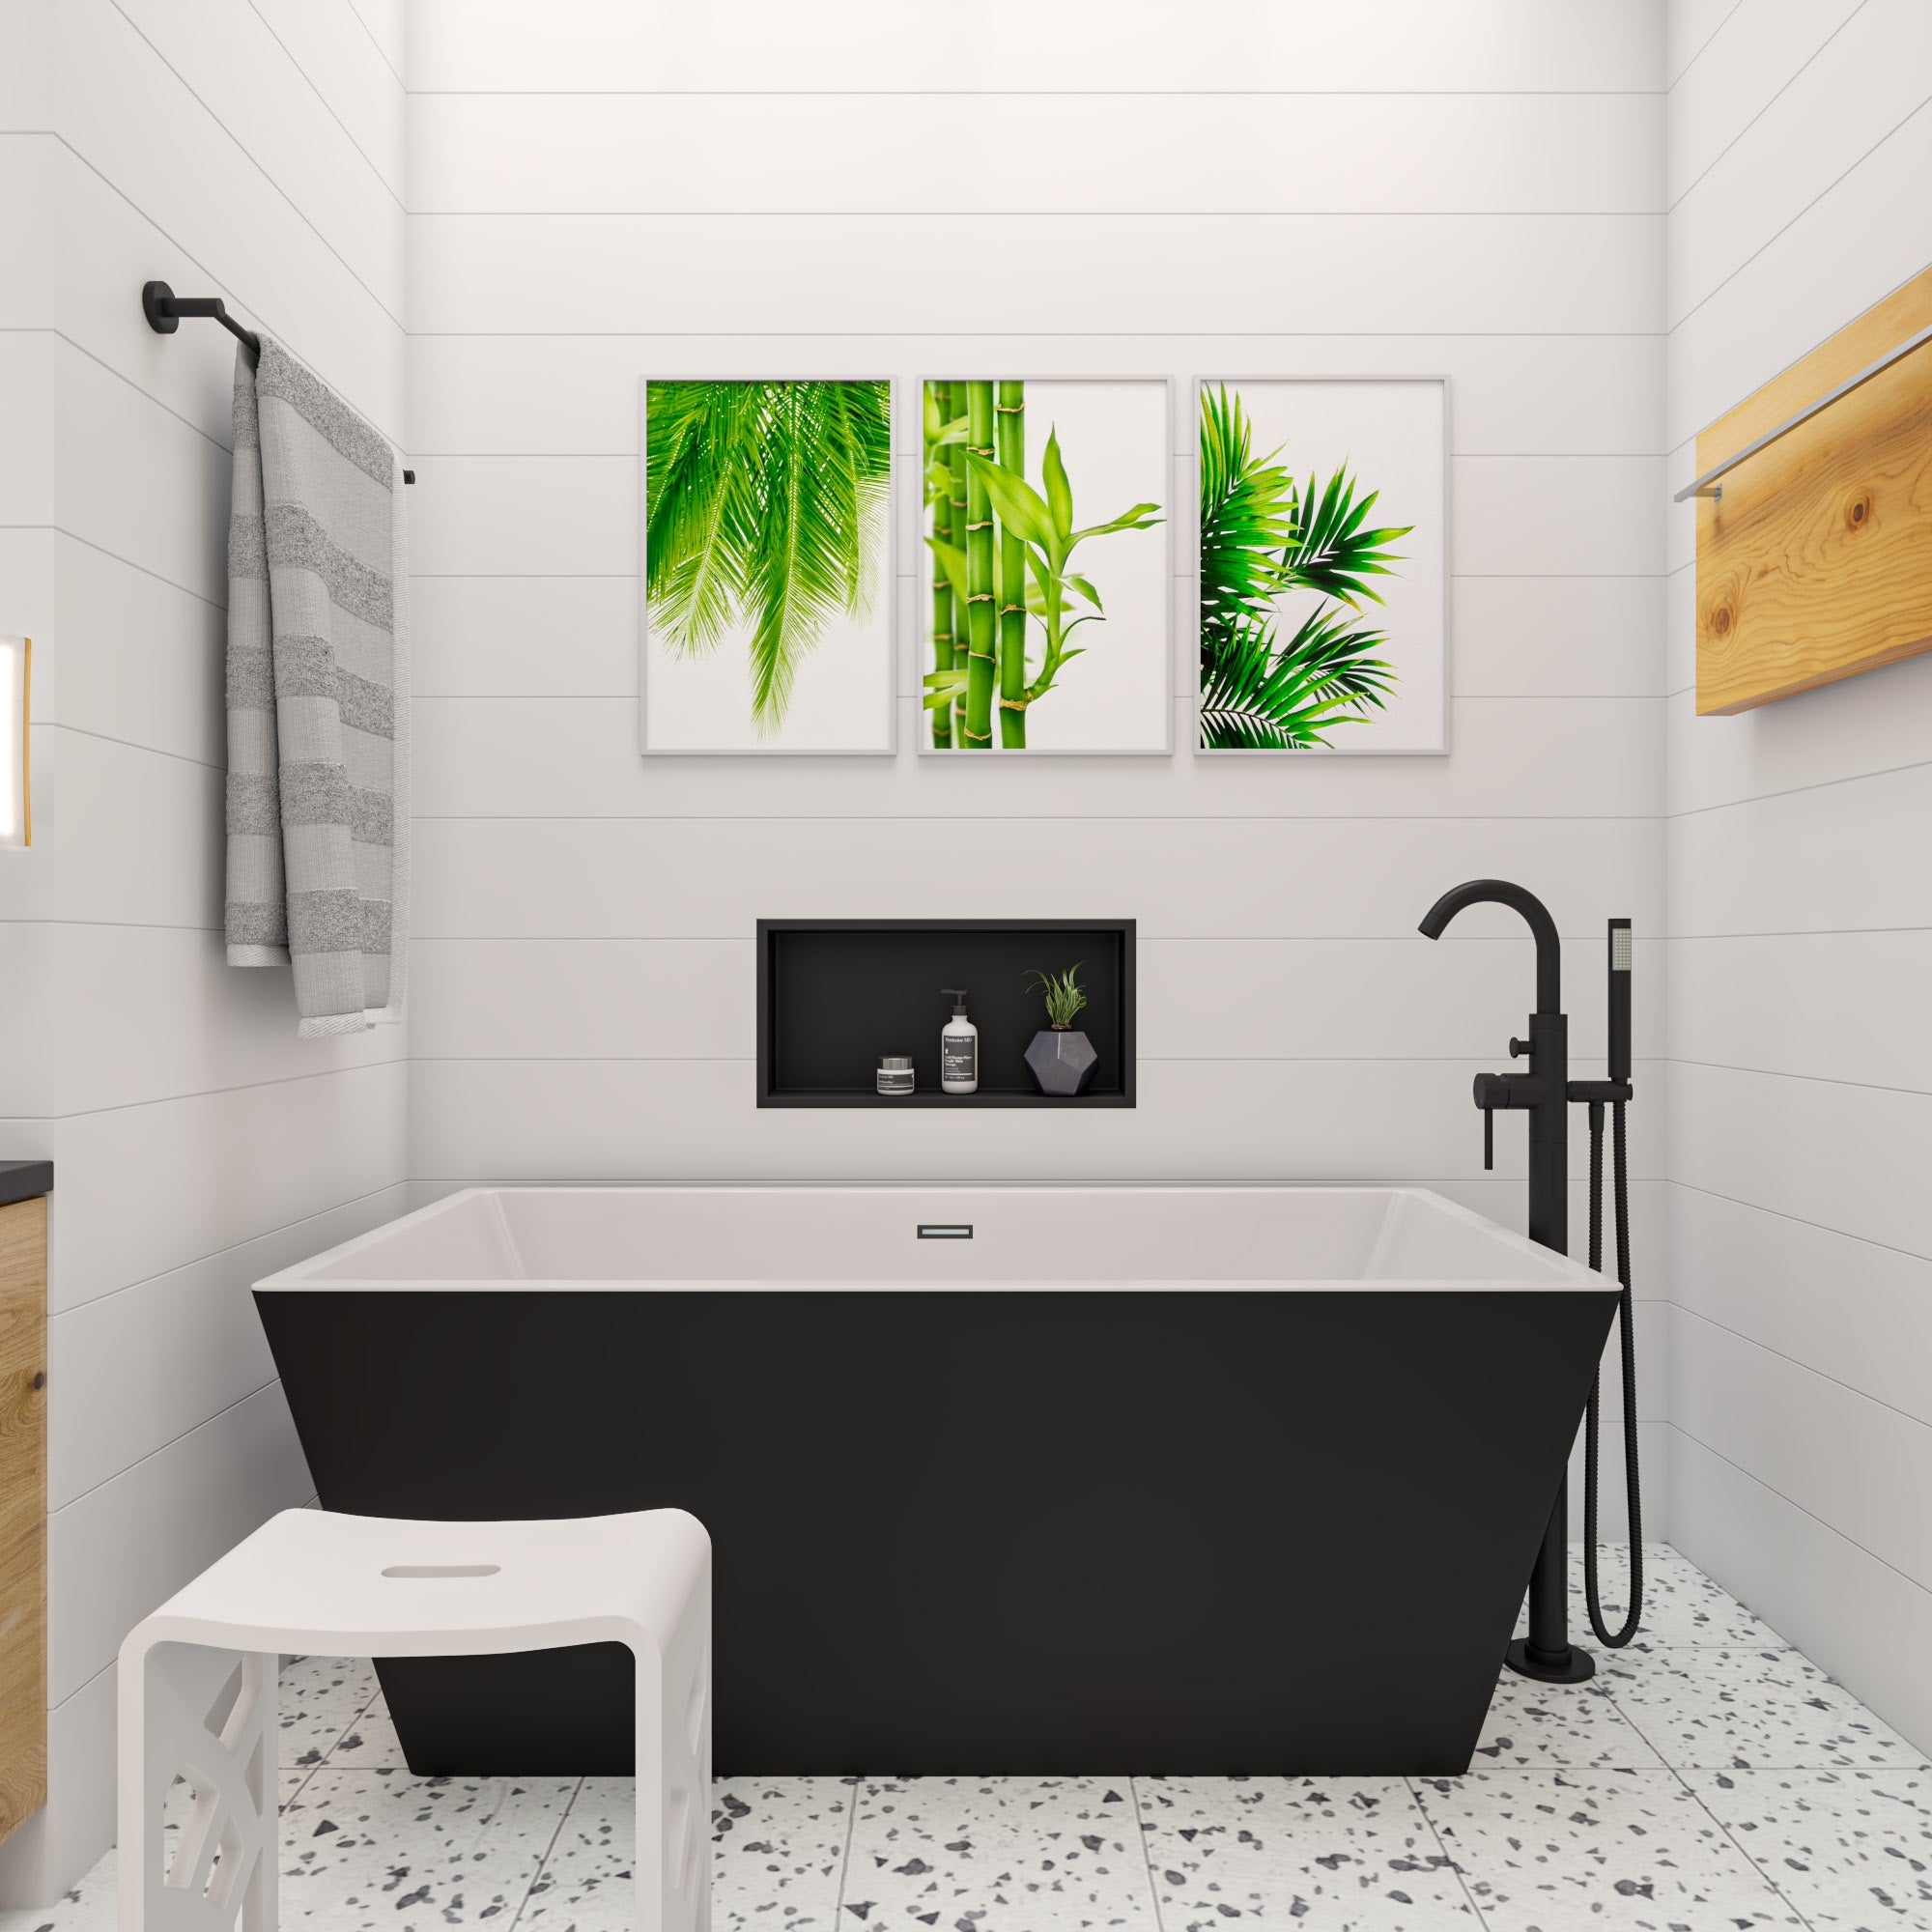 Alfi AB8834 59" Black & White Acrylic Free Standing Bathtub